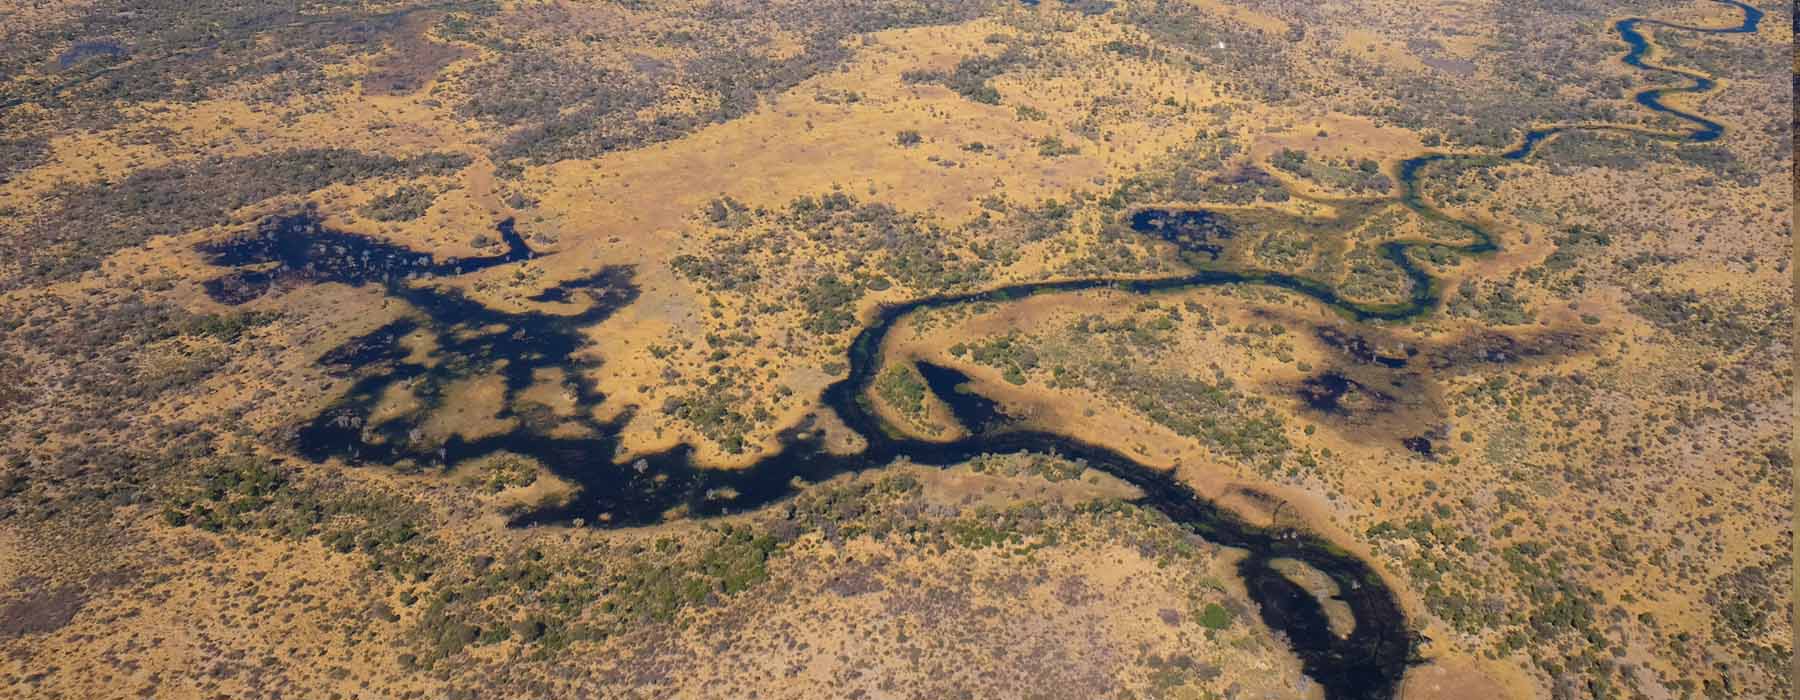 Tous nos voyages L'Okavango & sa région